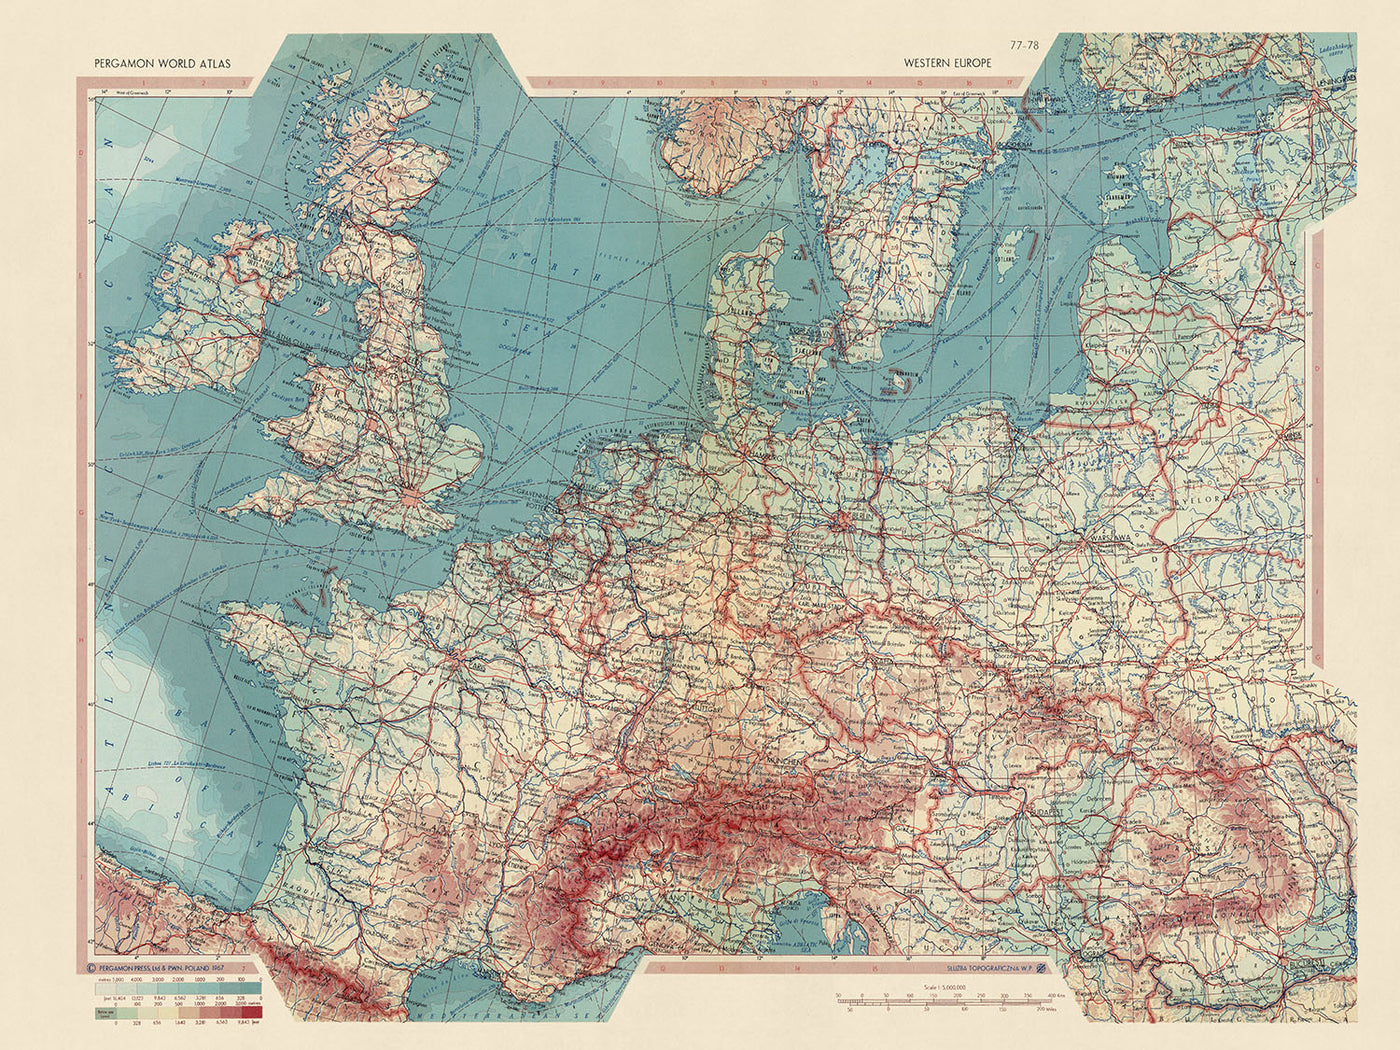 Alte Weltkarte von Westeuropa vom polnischen Topographiedienst der Armee, 1967: Detaillierte politische und physische Karte, deckt die britischen Inseln bis Rumänien ab, einschließlich Schifffahrtsrouten